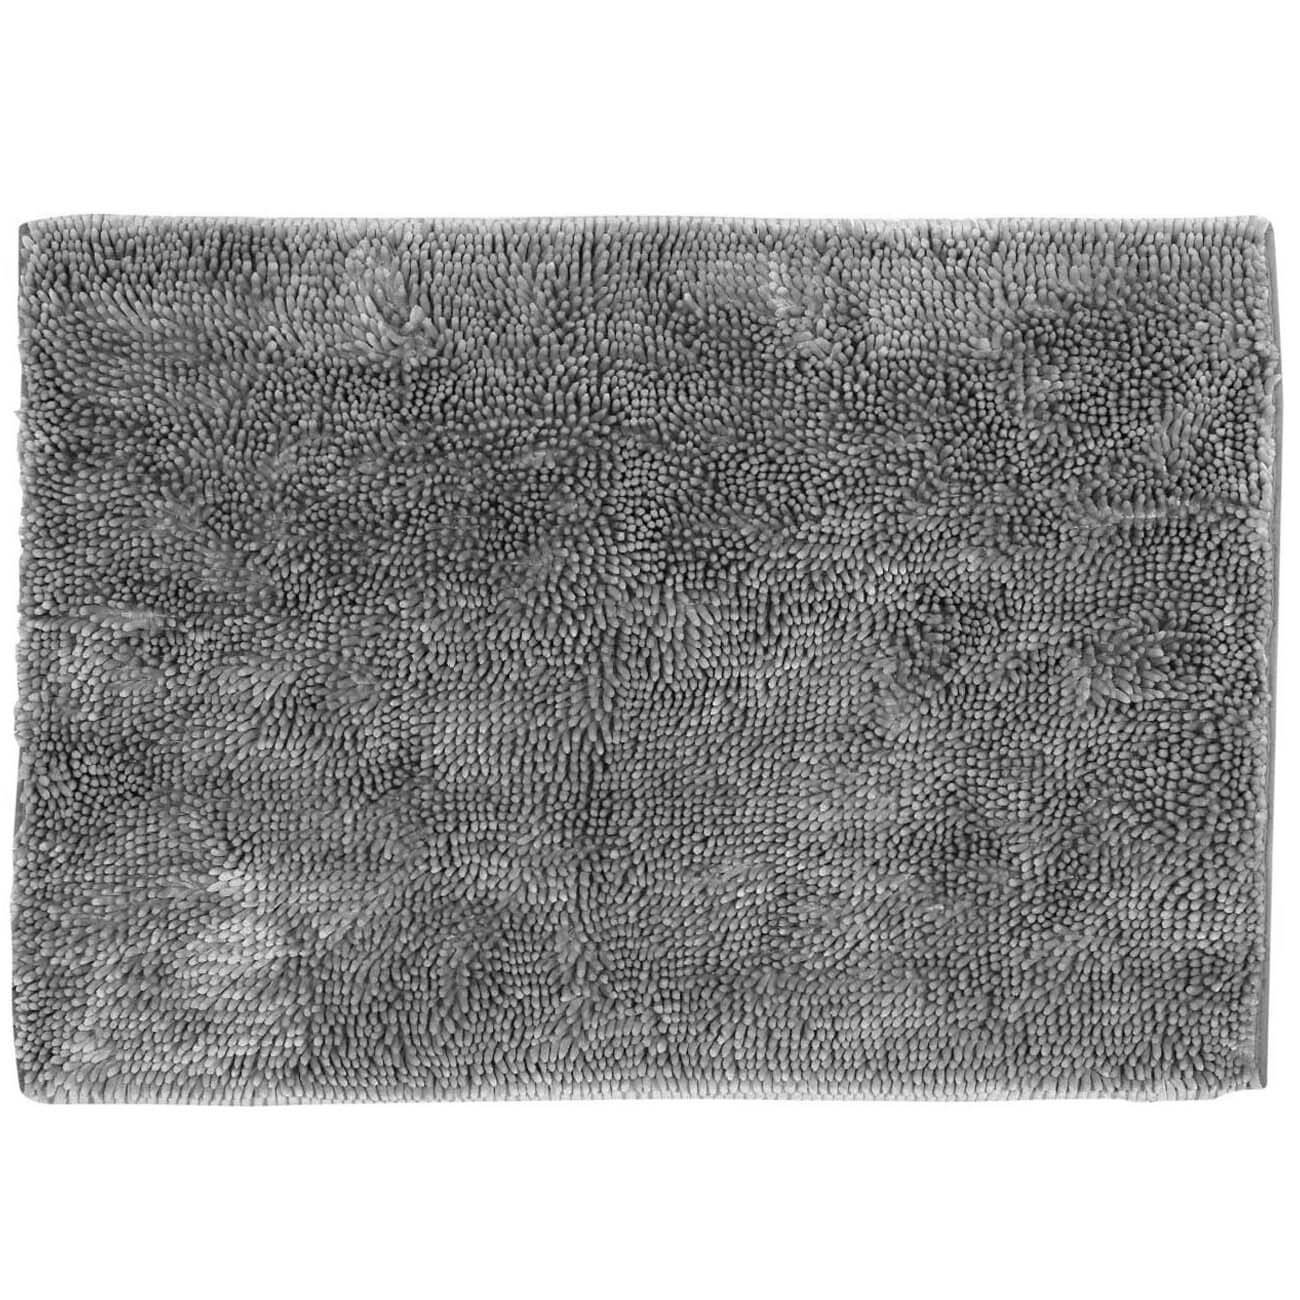 Коврик, 65х100 см, противоскользящий, полиэстер, серый, Fluffy изображение № 1